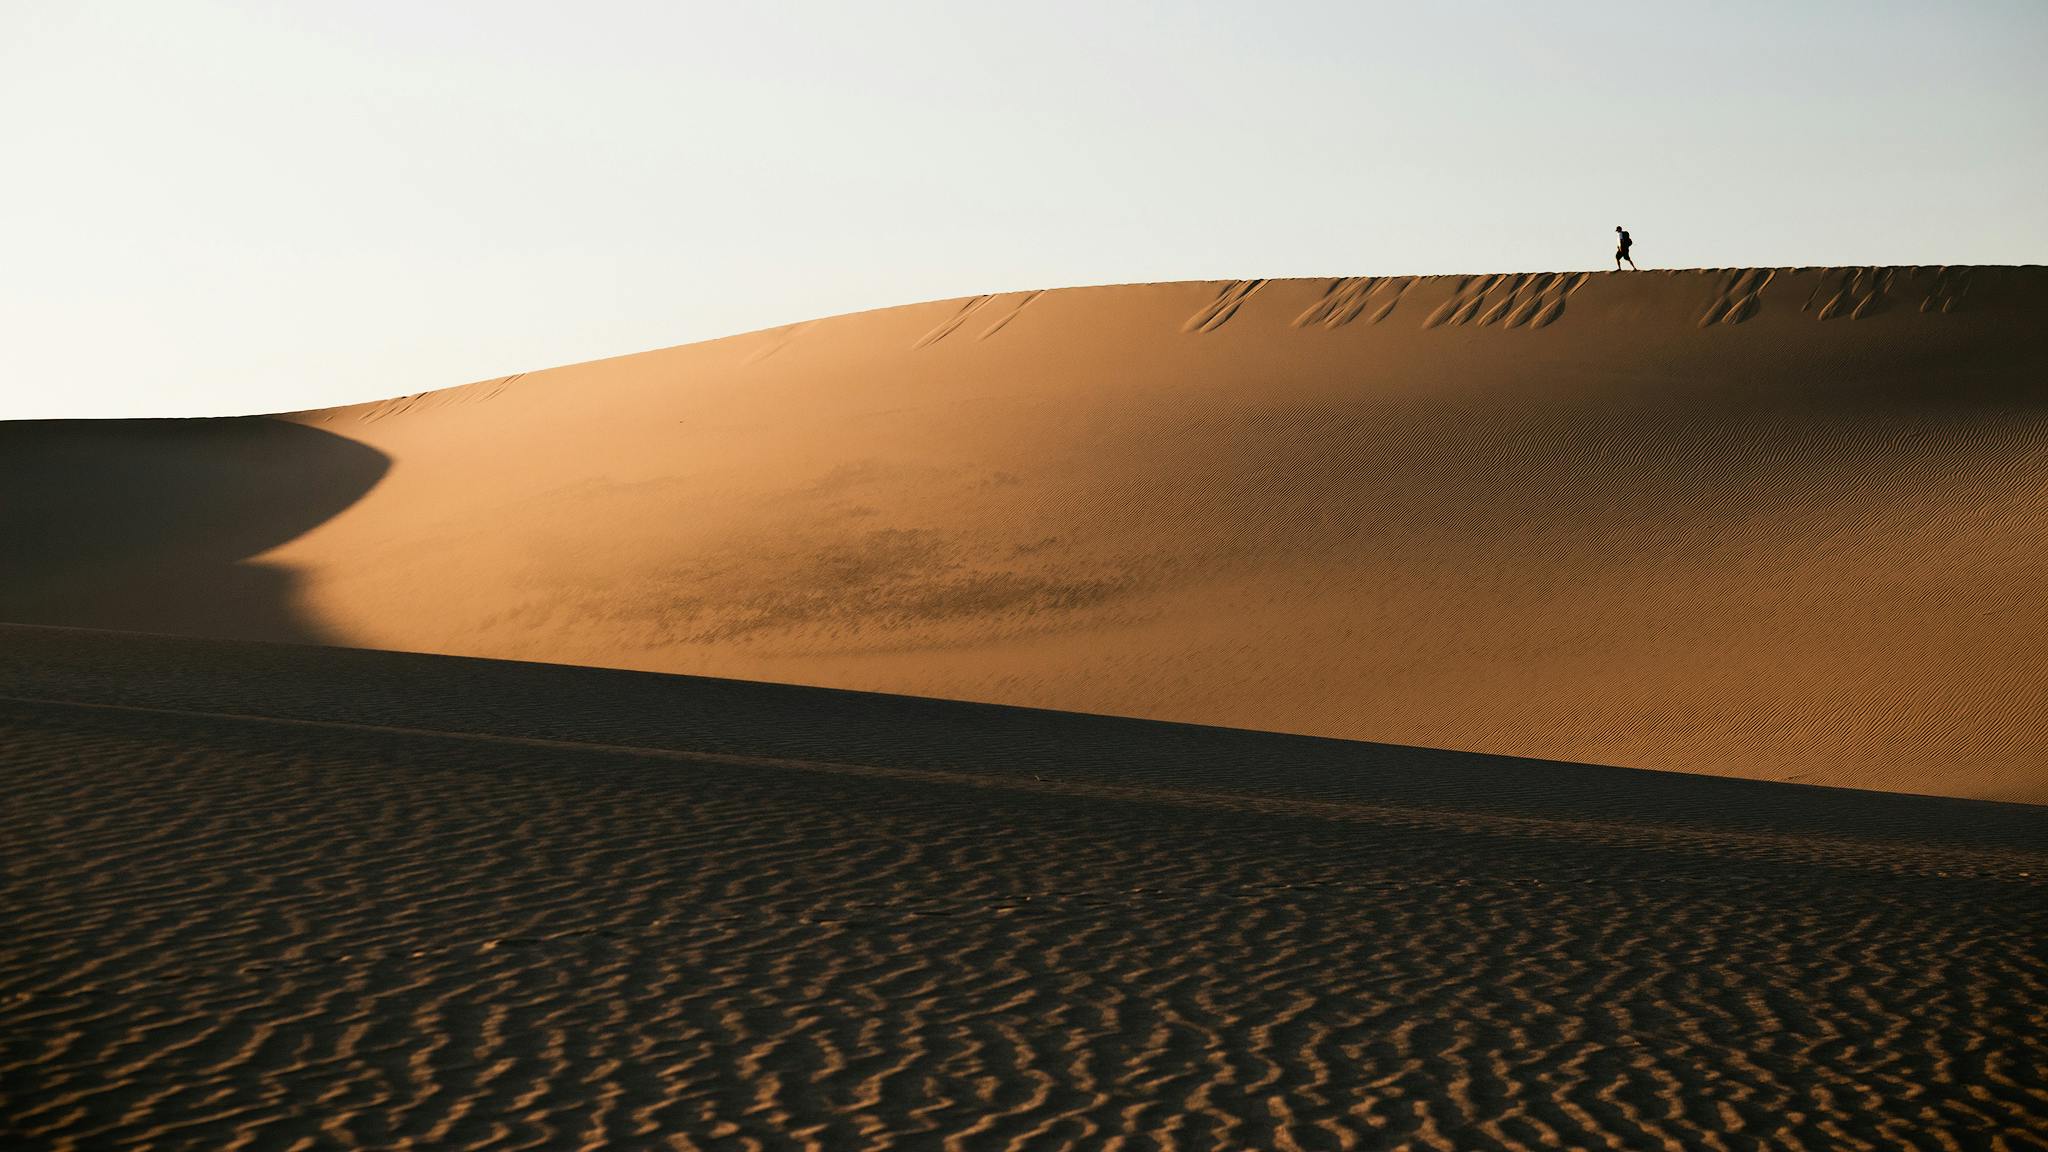  Guía Definitiva de Fotografía del Desierto